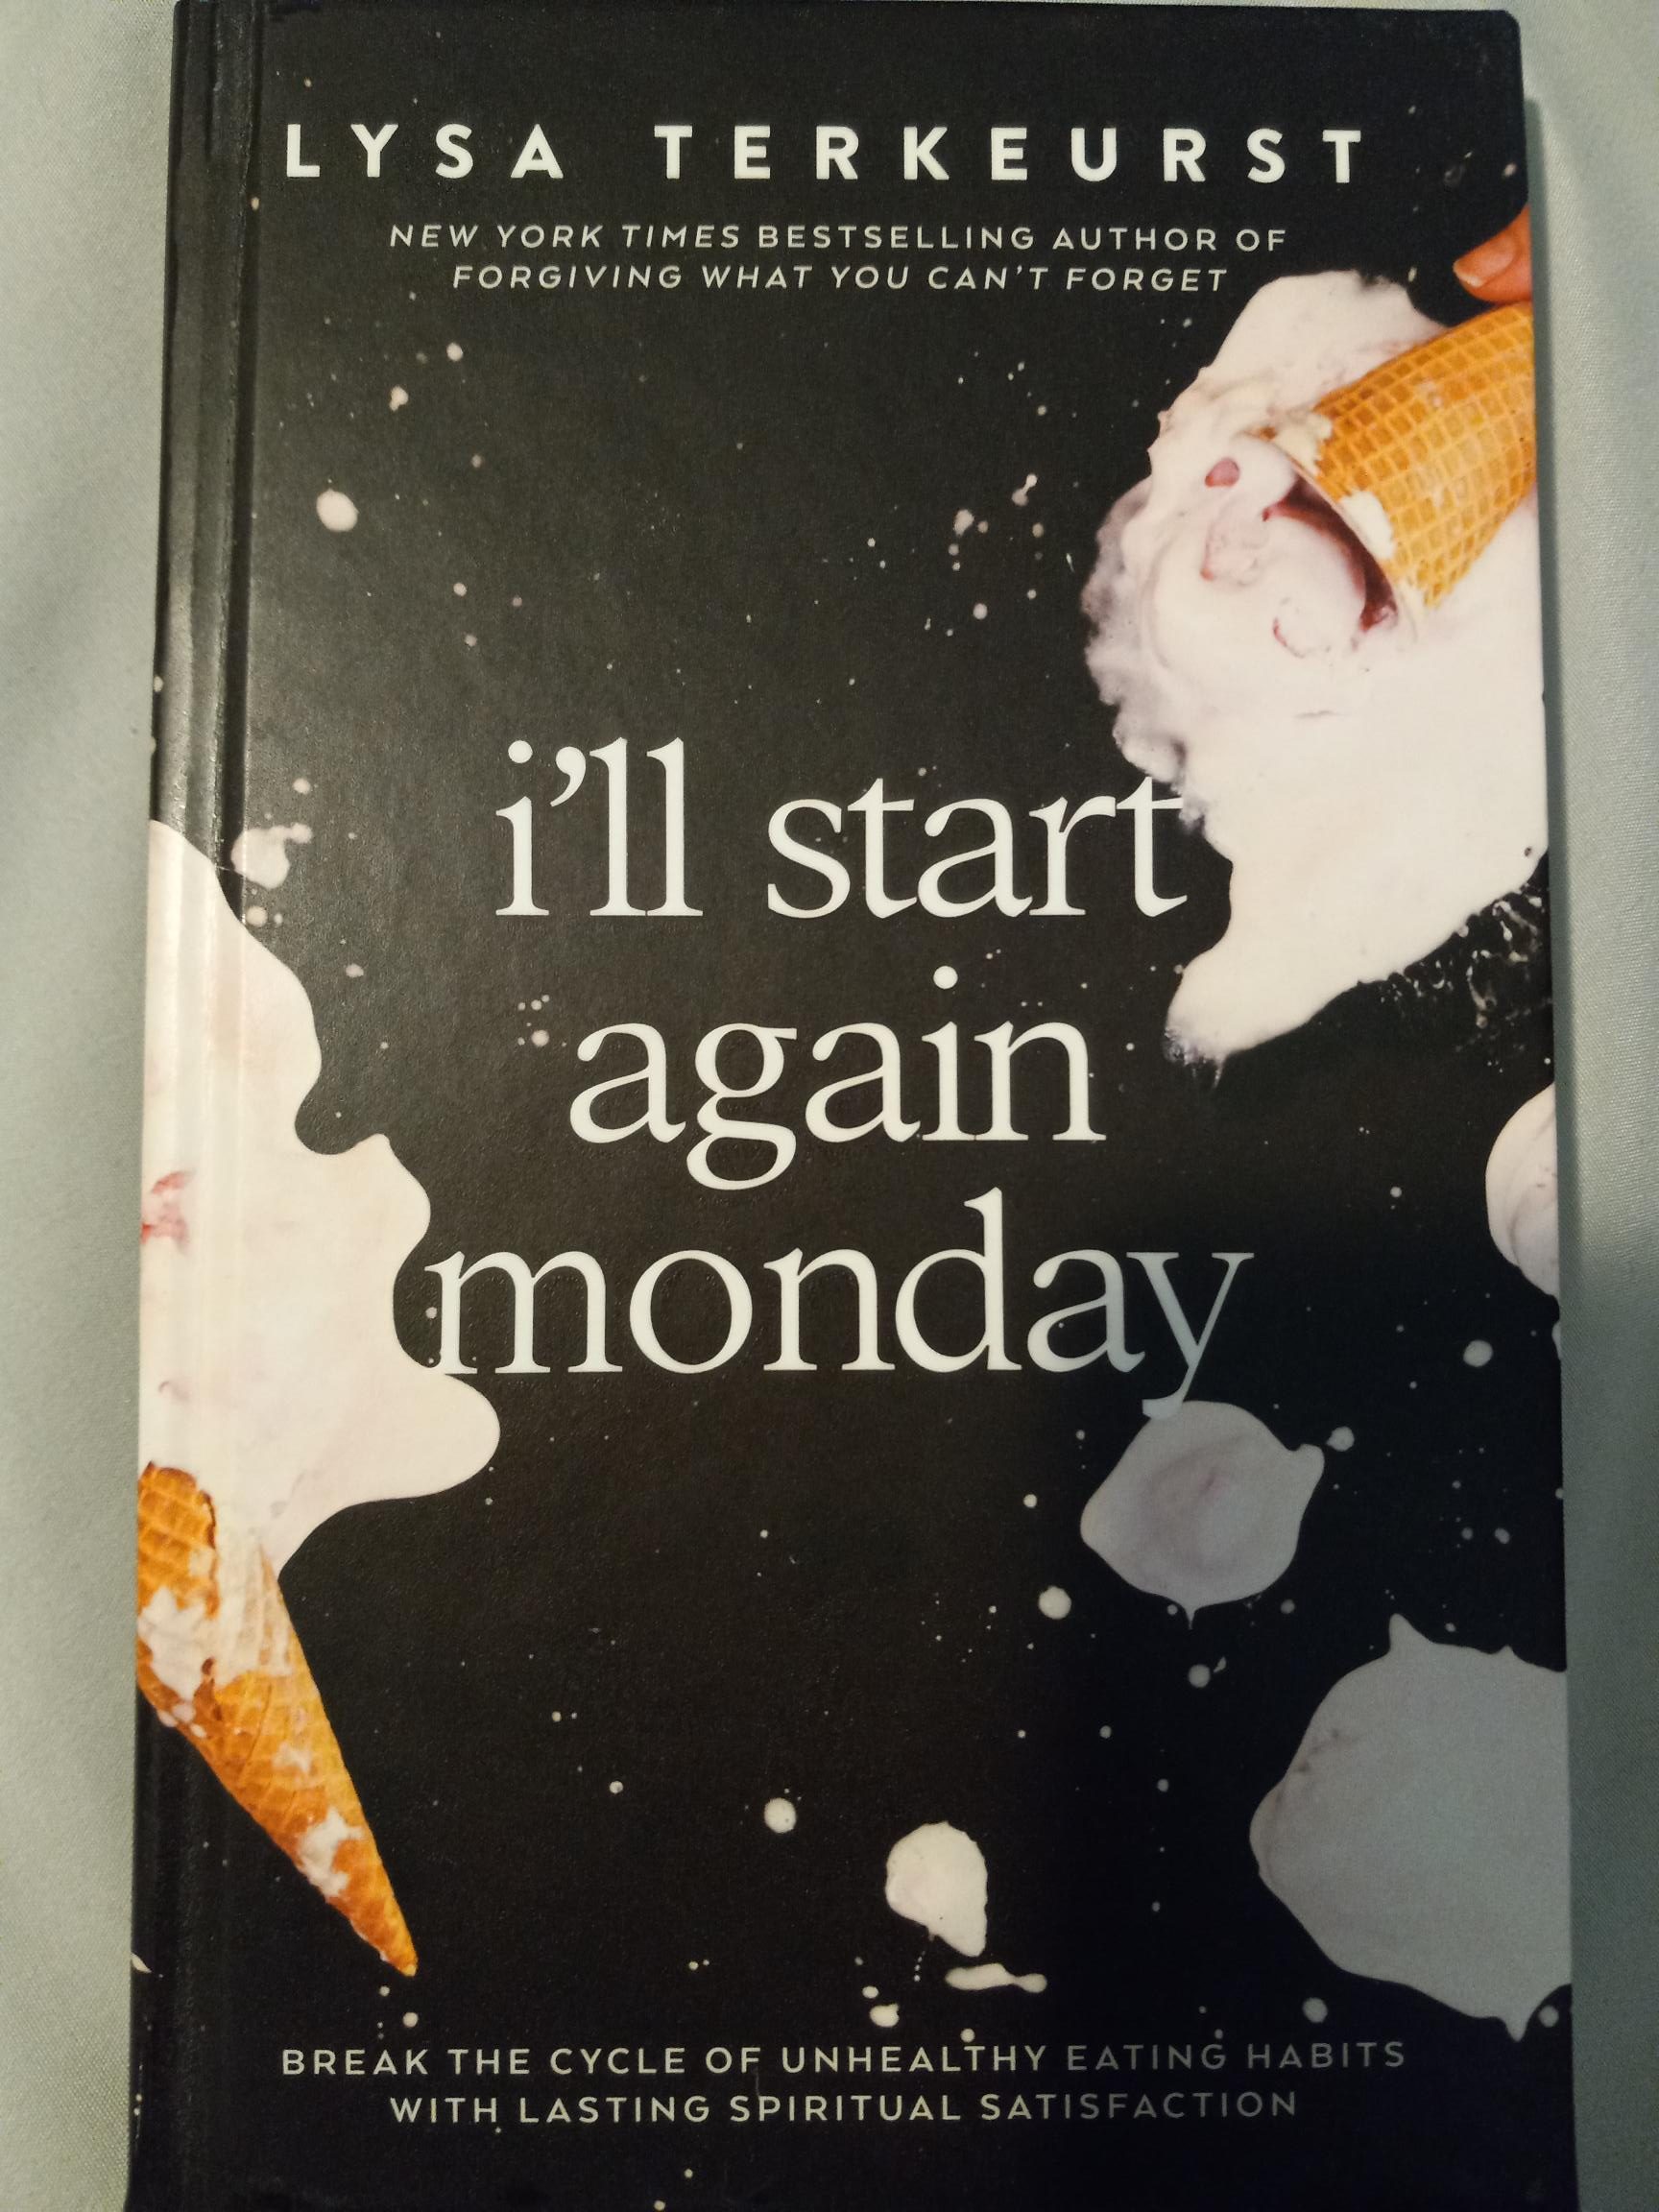 i'll start again monday by Lysa TerKeurst